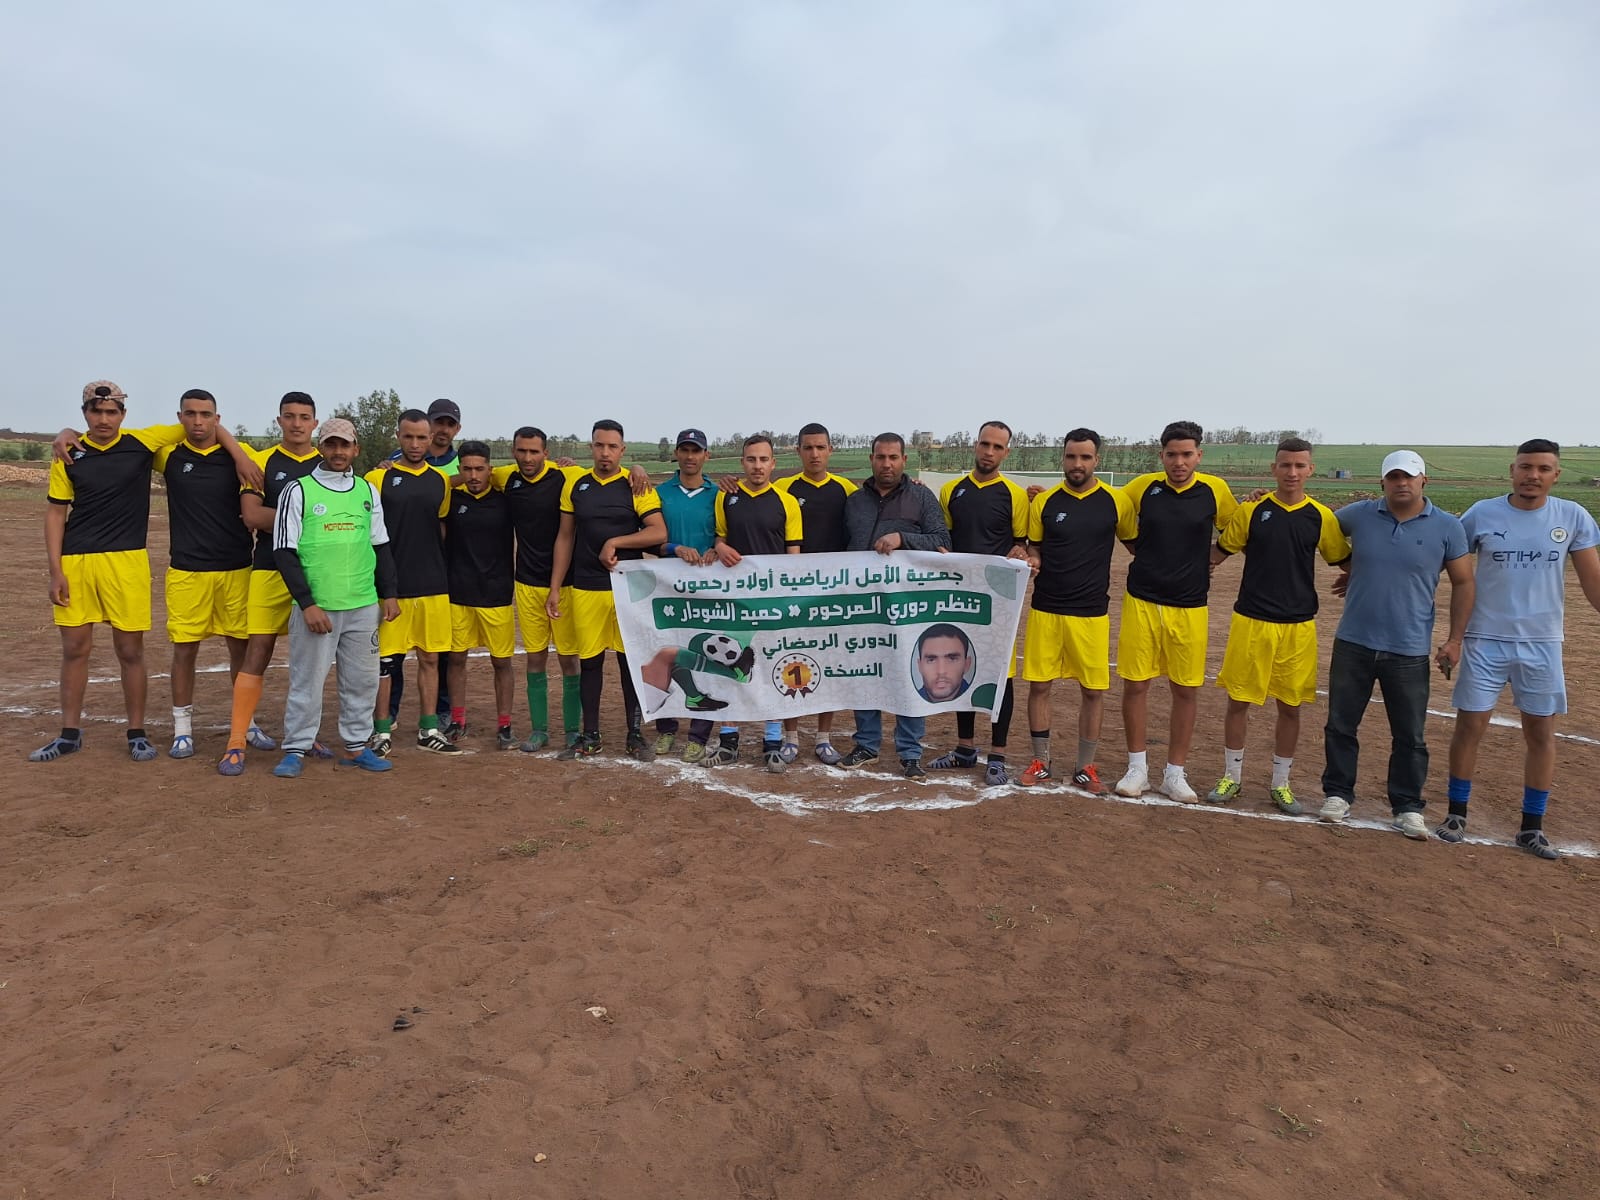 جمعية الامل الرياضية تنظم دوري رمضان لكرة القدم تكريما للمرحوم اللاعب السابق “حميد شودار”